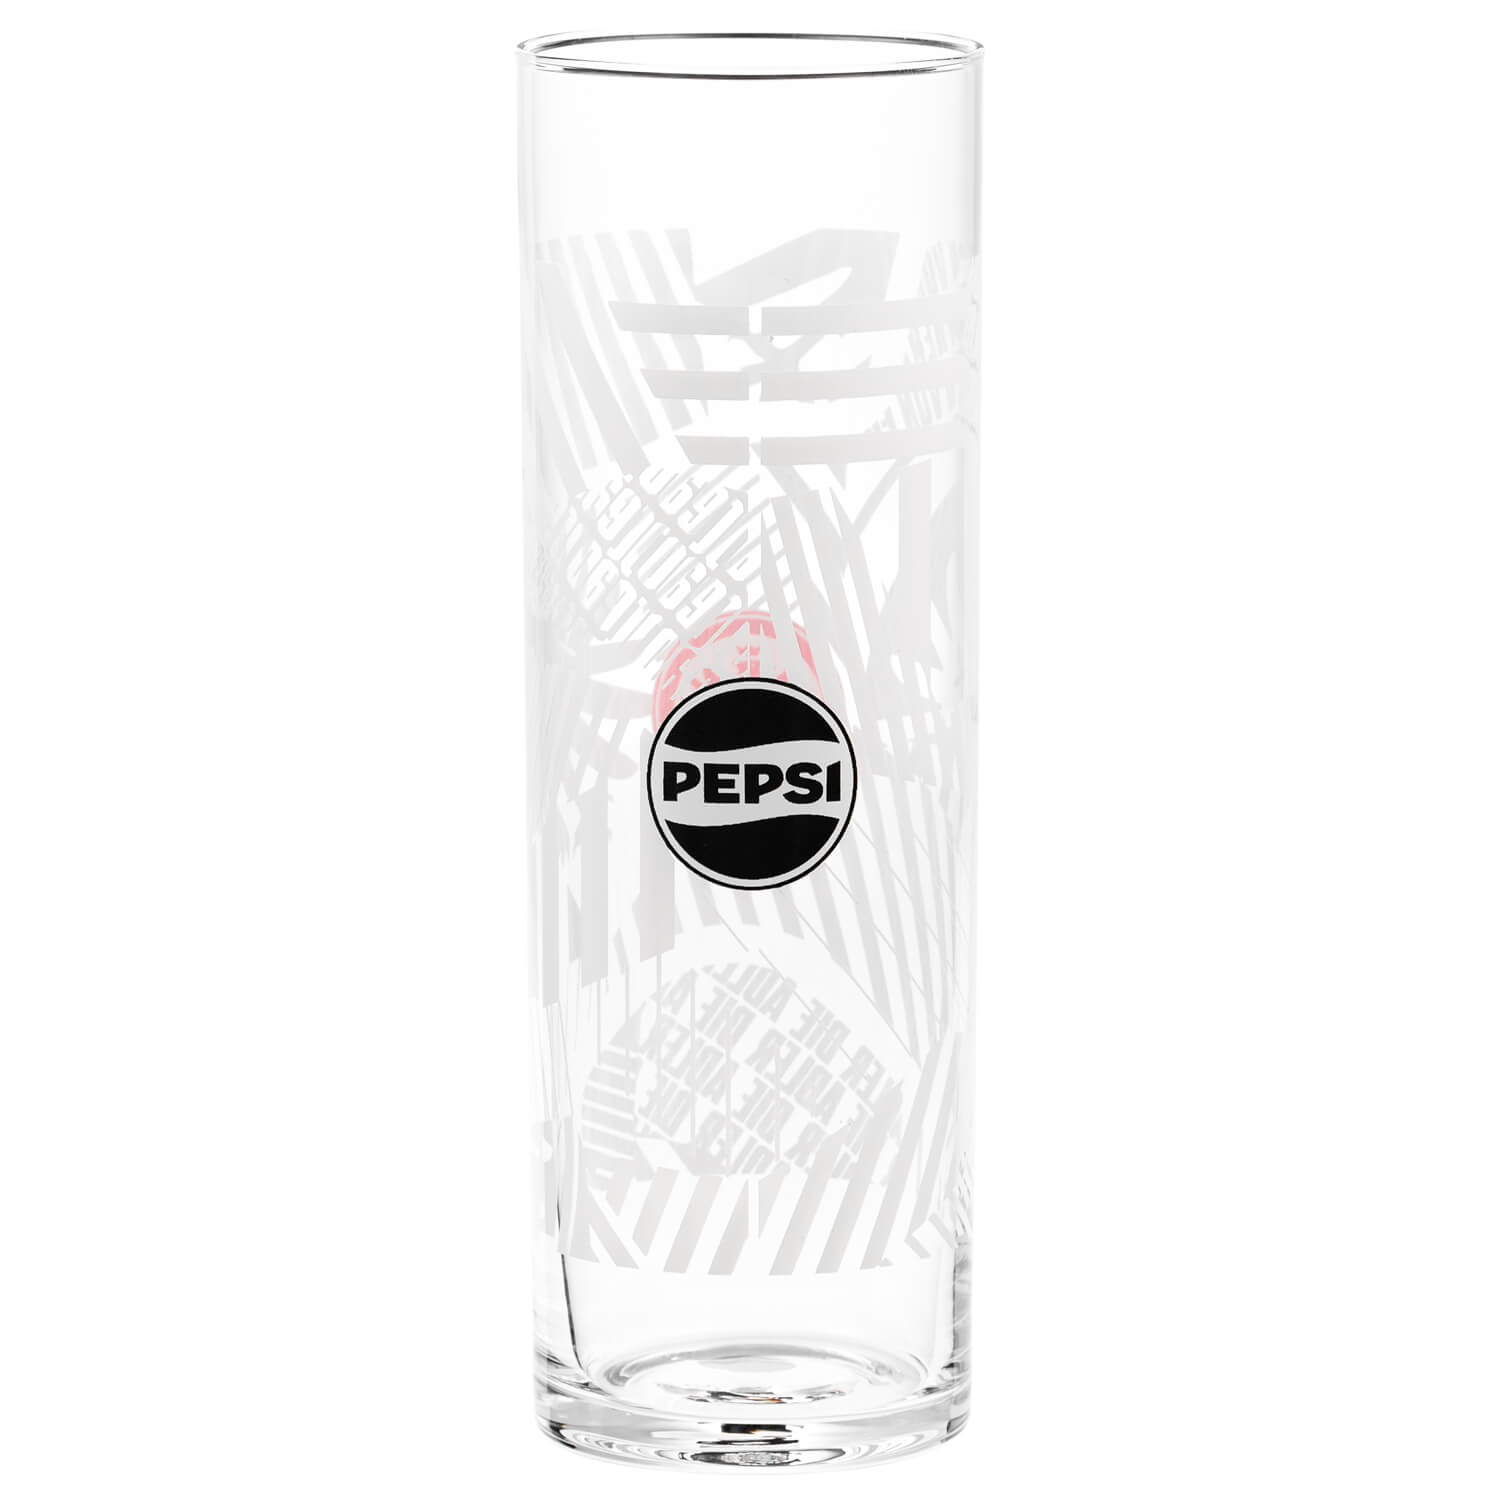 Bild 3: 2er Set Longdrinkglas Pepsi